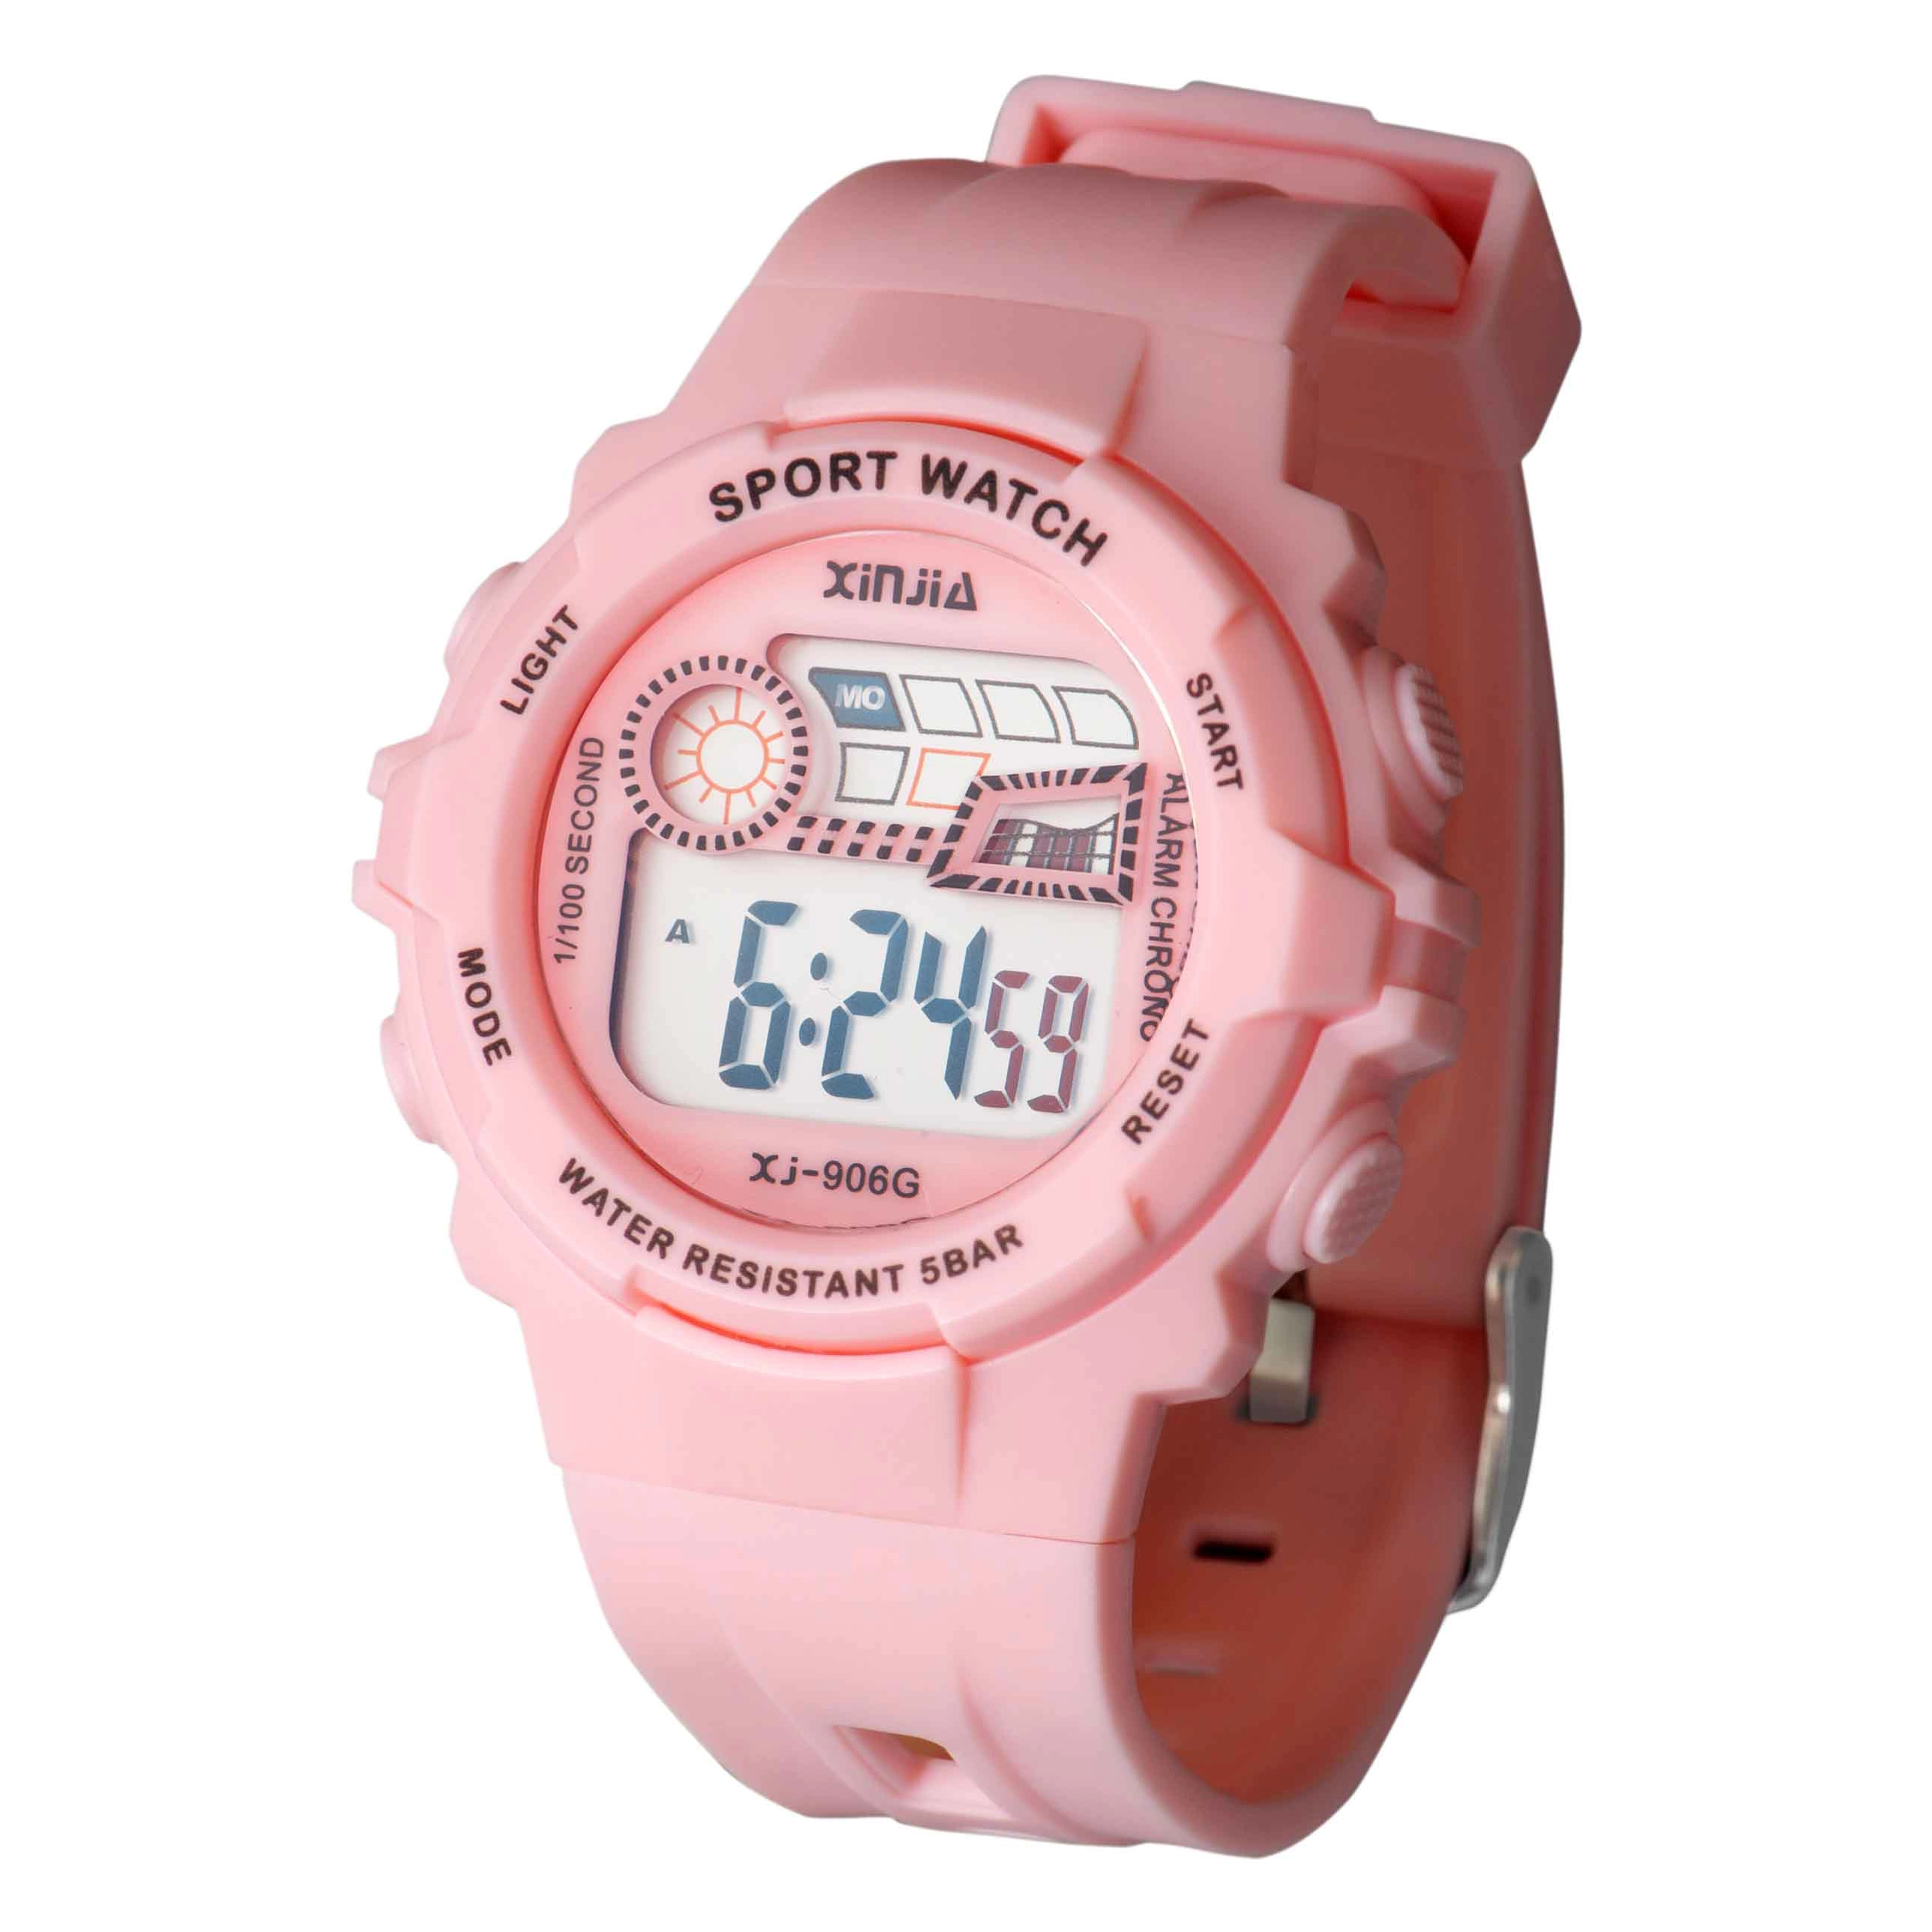 Xinjia New In Energetic Series Girls Water Resistant Digital Wrist Watch